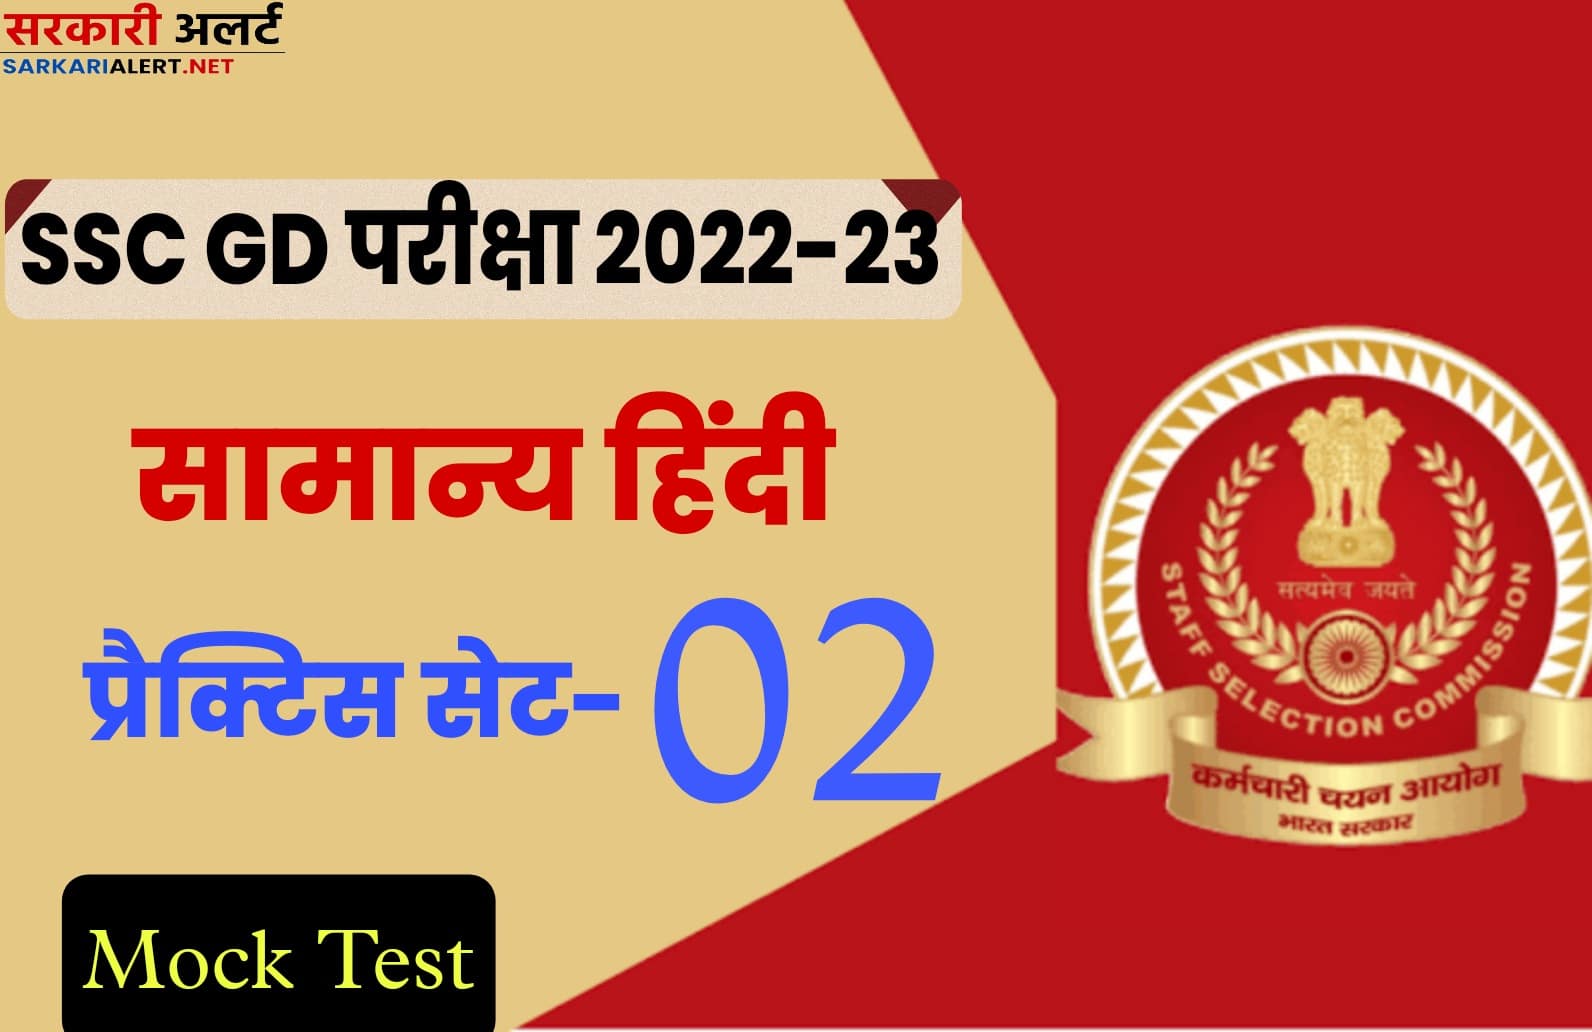 SSC GD Hindi Practice Set 02 : एसएससी जीडी की परीक्षा से पहले मुख्य प्रश्नों का संग्रह जरूर पढ़ें